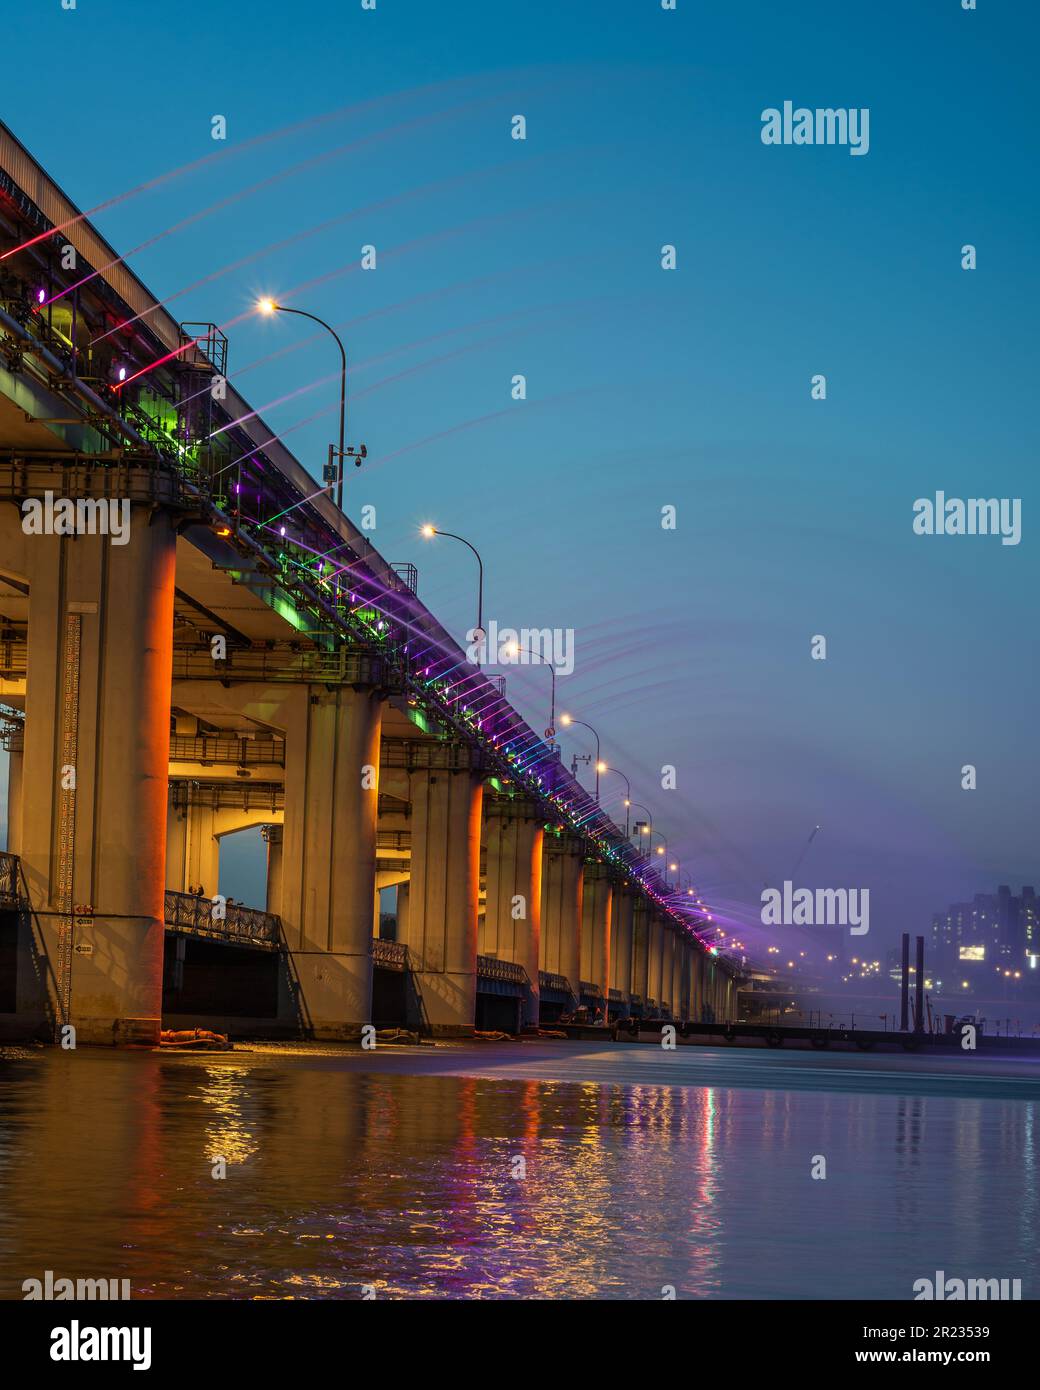 Banpo Bridge Fontana dell'arcobaleno al chiaro di luna sul fiume Han a Seoul, capitale della Corea del Sud Foto Stock